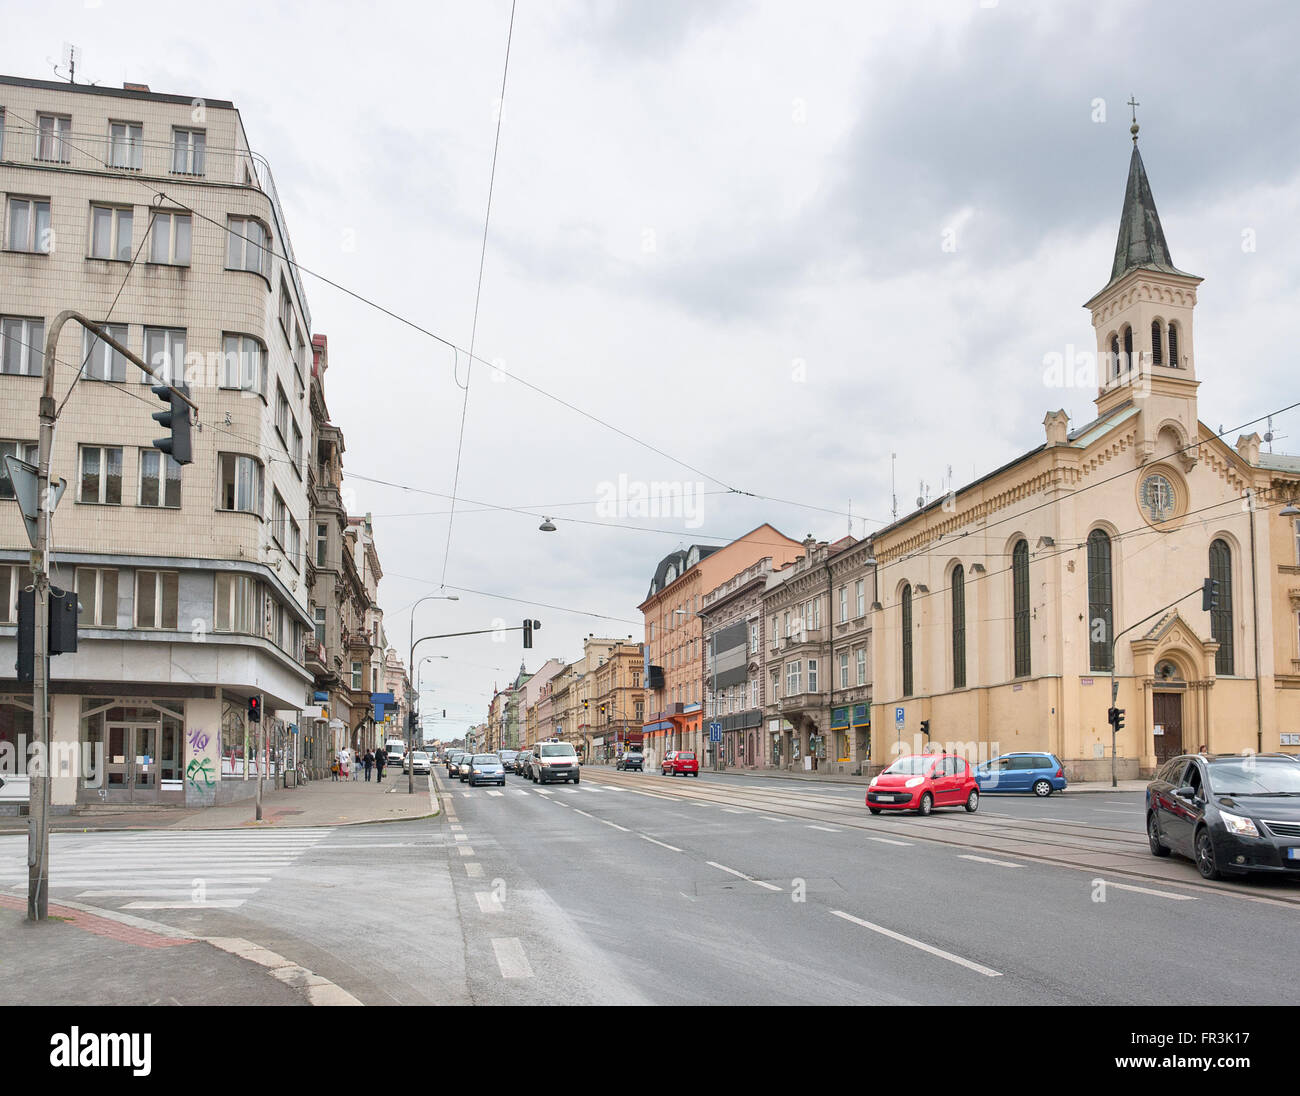 Vue sur la ville de Pilsen, une ville de la République tchèque Banque D'Images